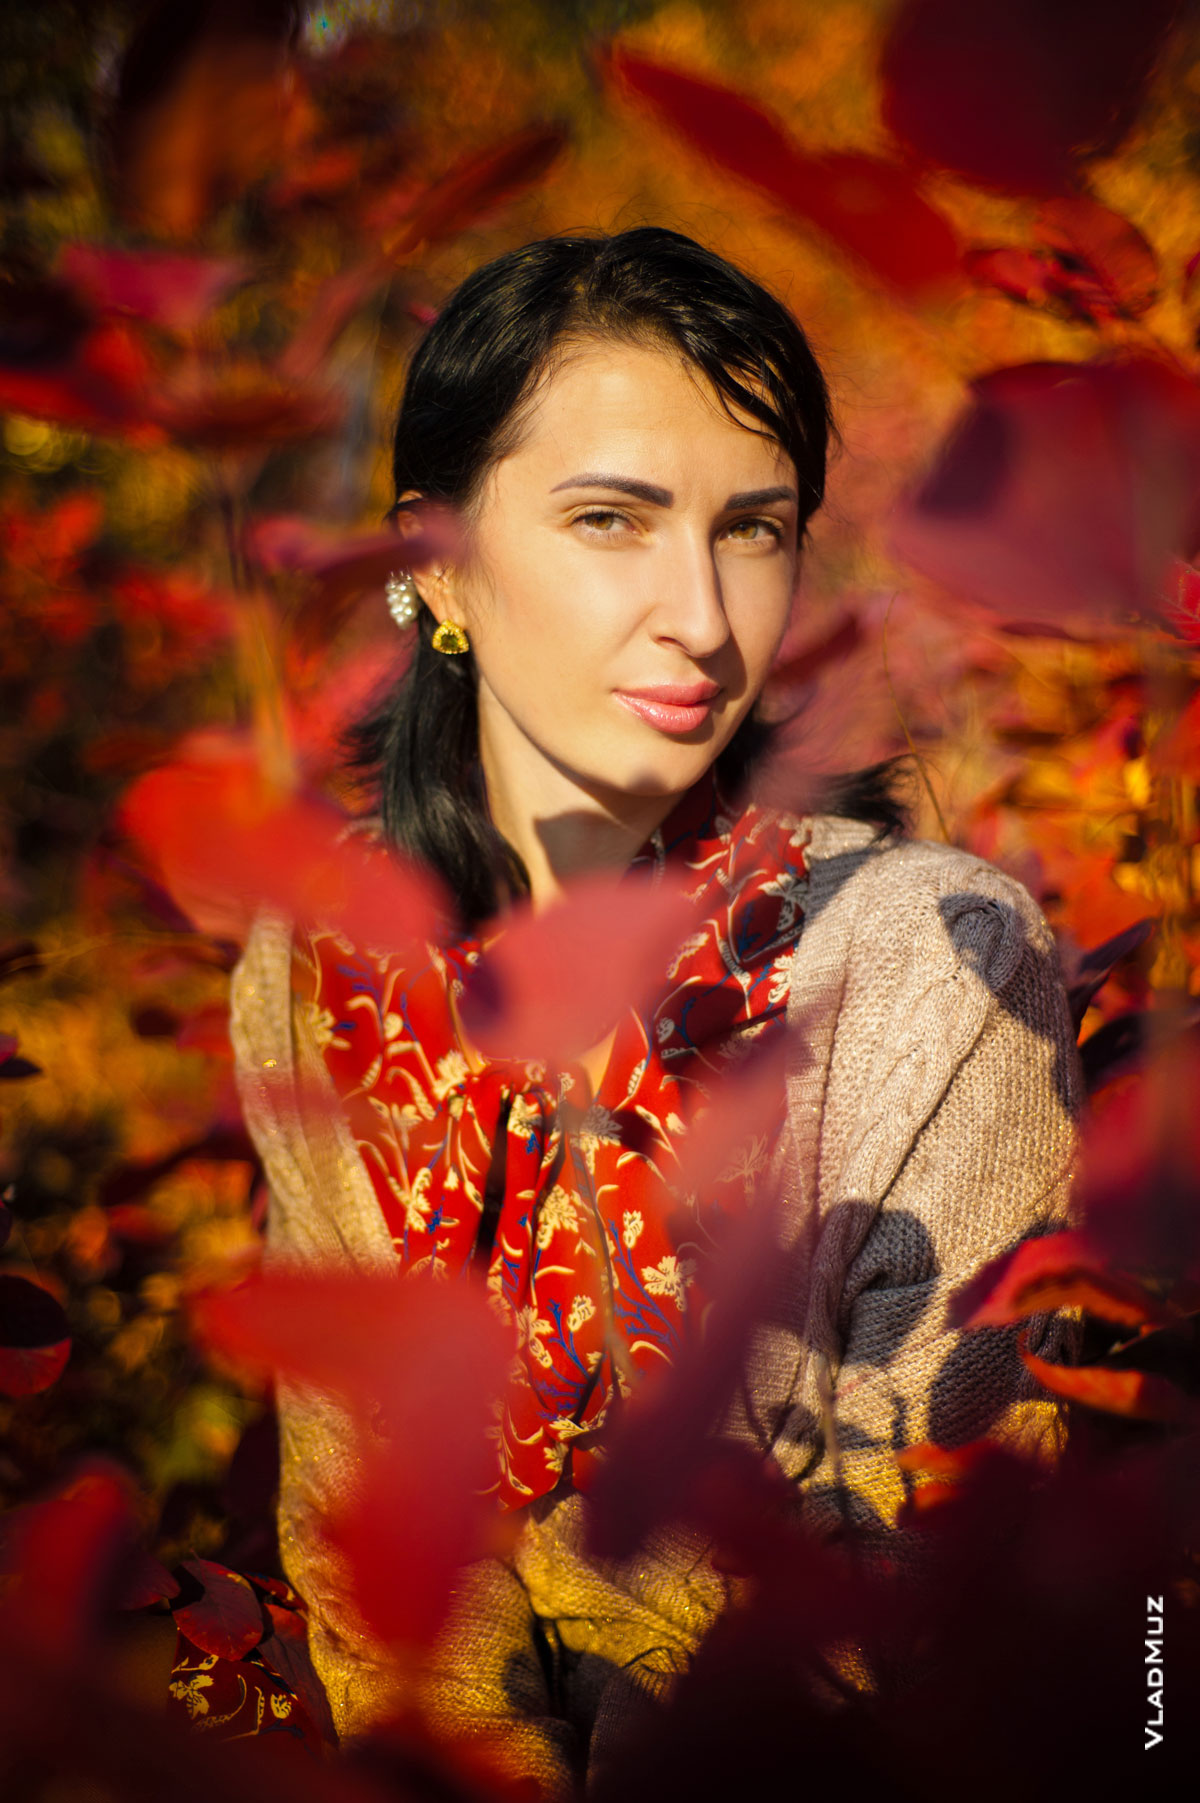 Яркий осенний фотопортрет девушки среди красных листьев